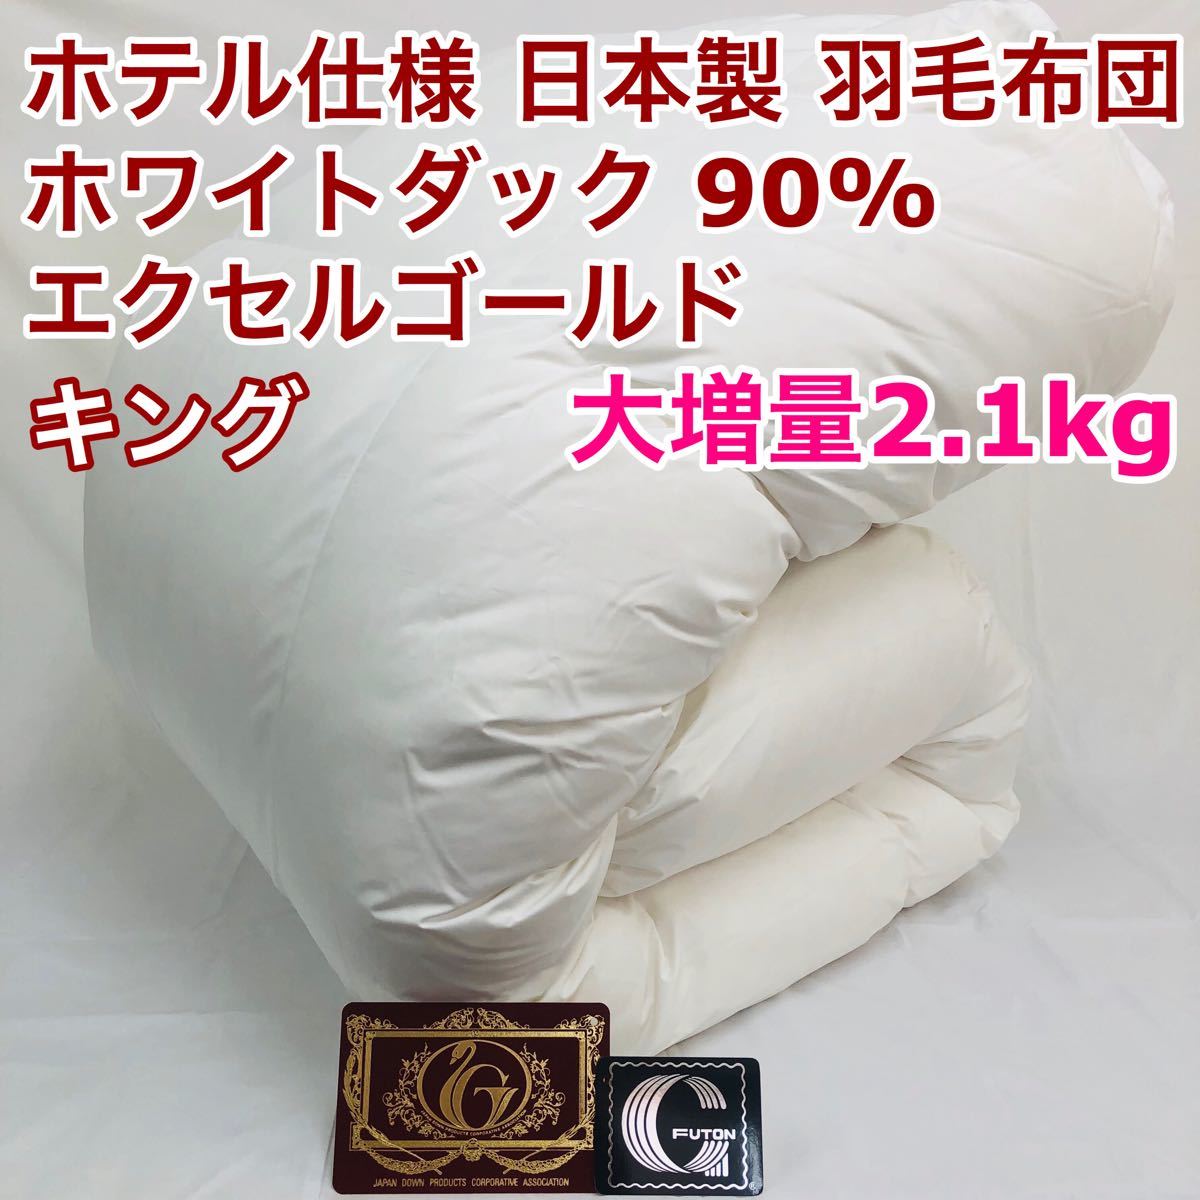 羽毛布団 シングル ニューゴールド 白色 日本製 150×210cm 特別価格 